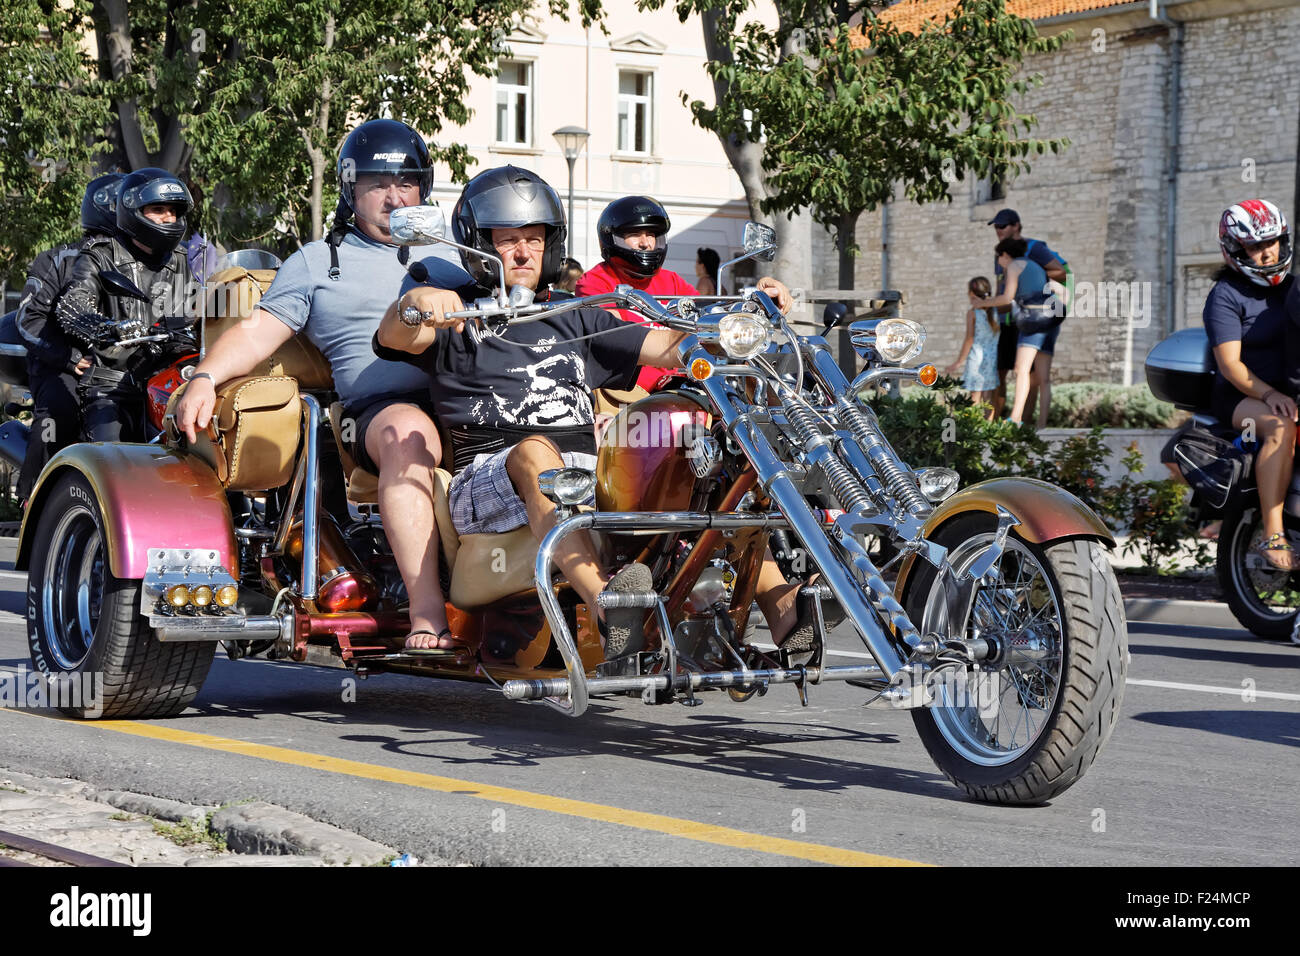 PULA, Kroatien - AUG 29: Unbekannte Teilnehmer der jährlichen Parade in Kroatien Bike Week am 29. August 2015 in Pula, Kroatien Stockfoto